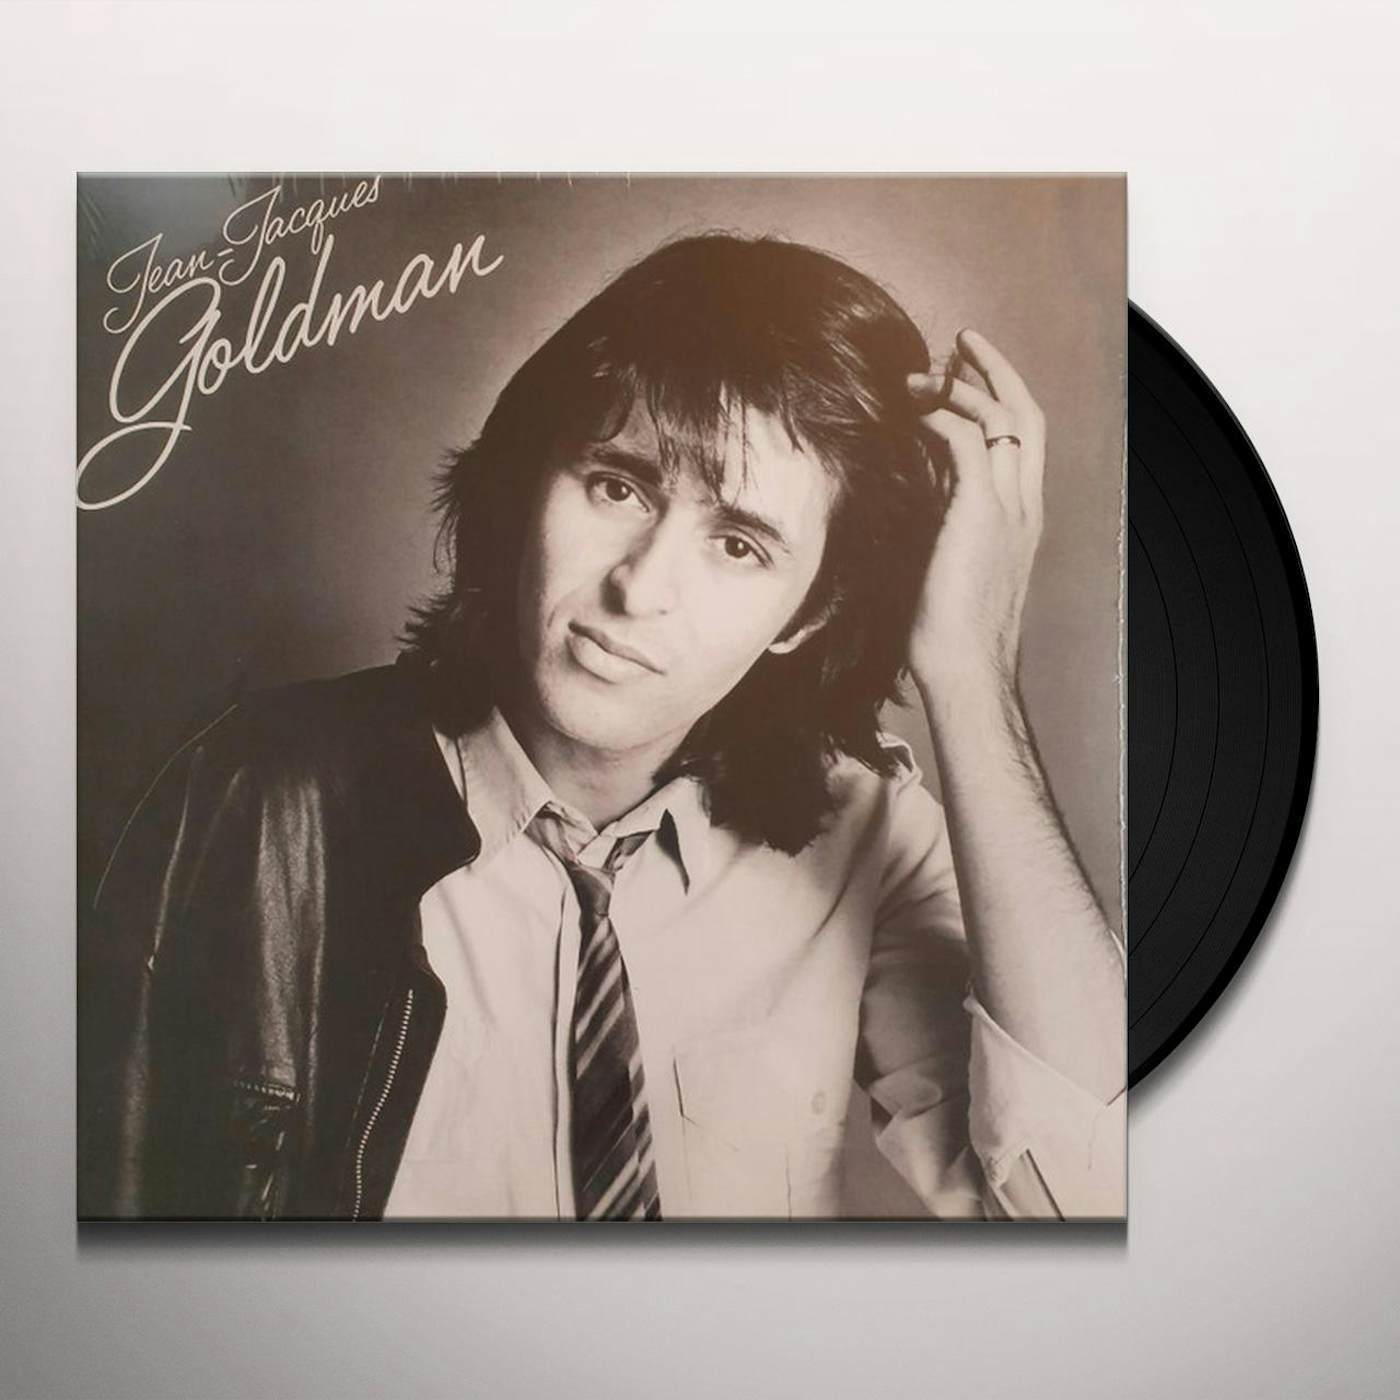 Jean-Jacques Goldman Minoritaire Vinyl Record